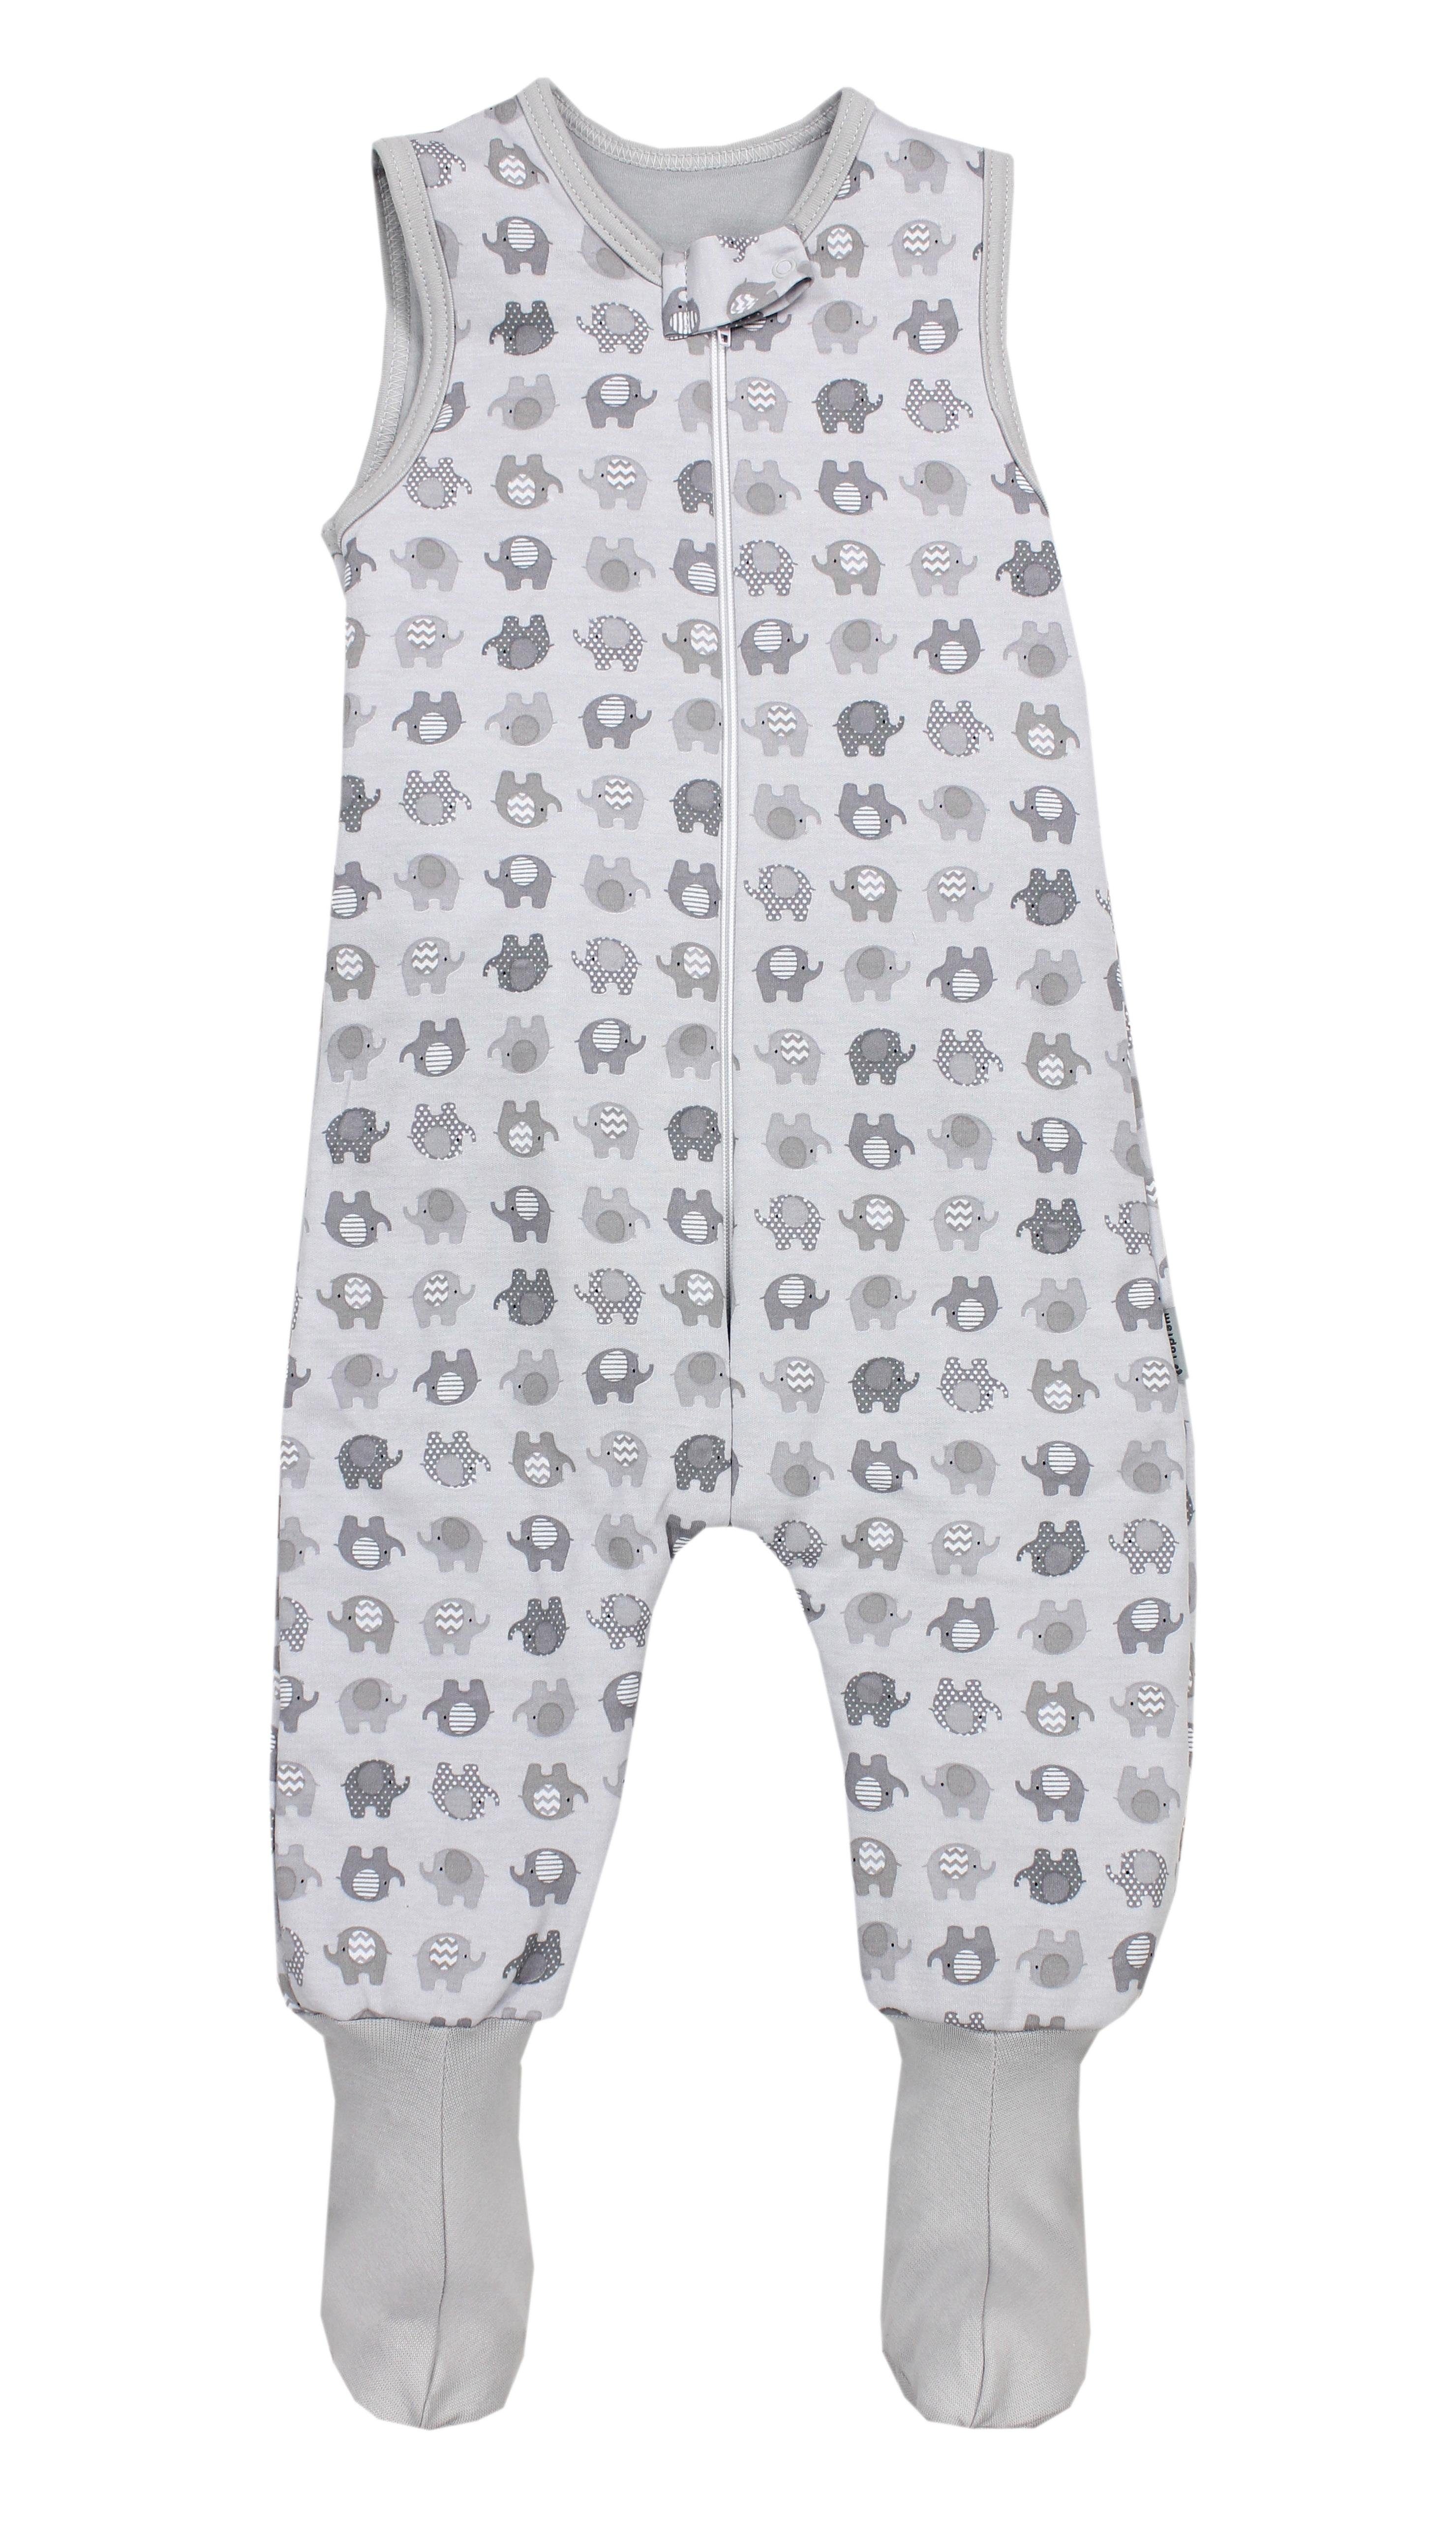 TupTam Babyschlafsack Winterschlafsack mit Beinen und Füßen OEKO-TEX zertifiziert, 2.5 TOG Elefant Grau